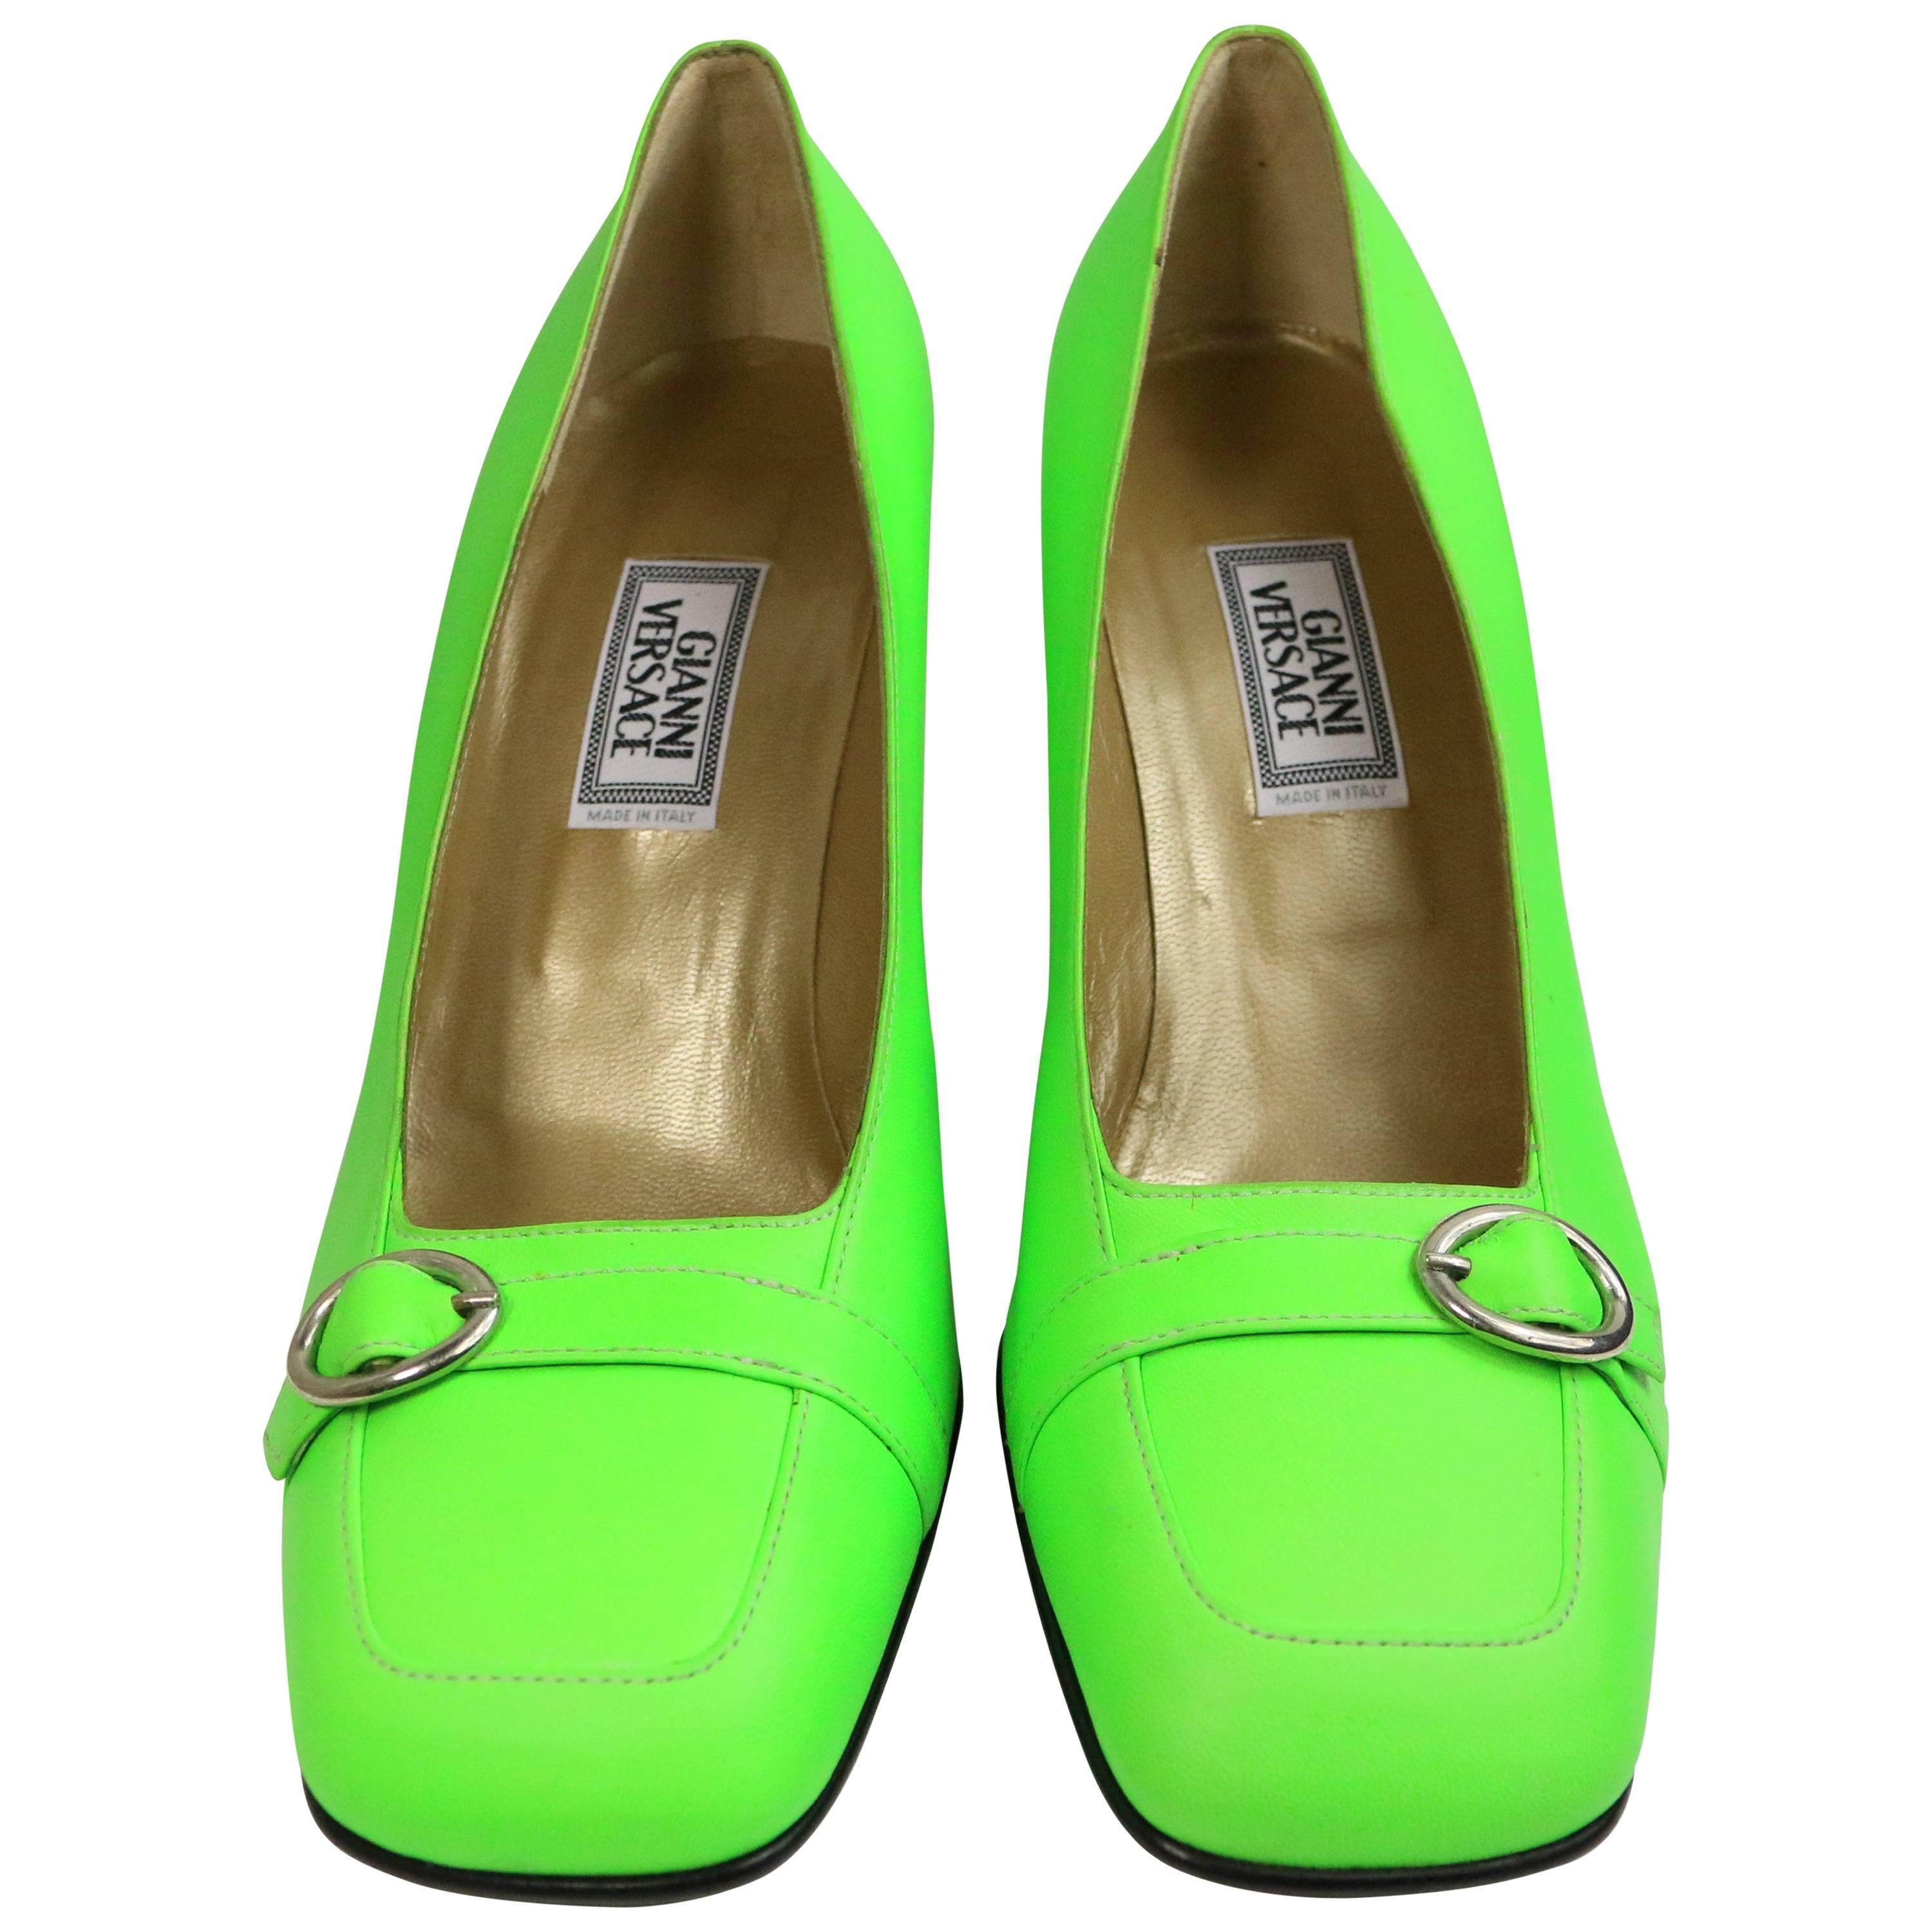 High Heels Women Lime Green | Green Pumps Heels Women | Lime Green Shoes  Women - Women - Aliexpress